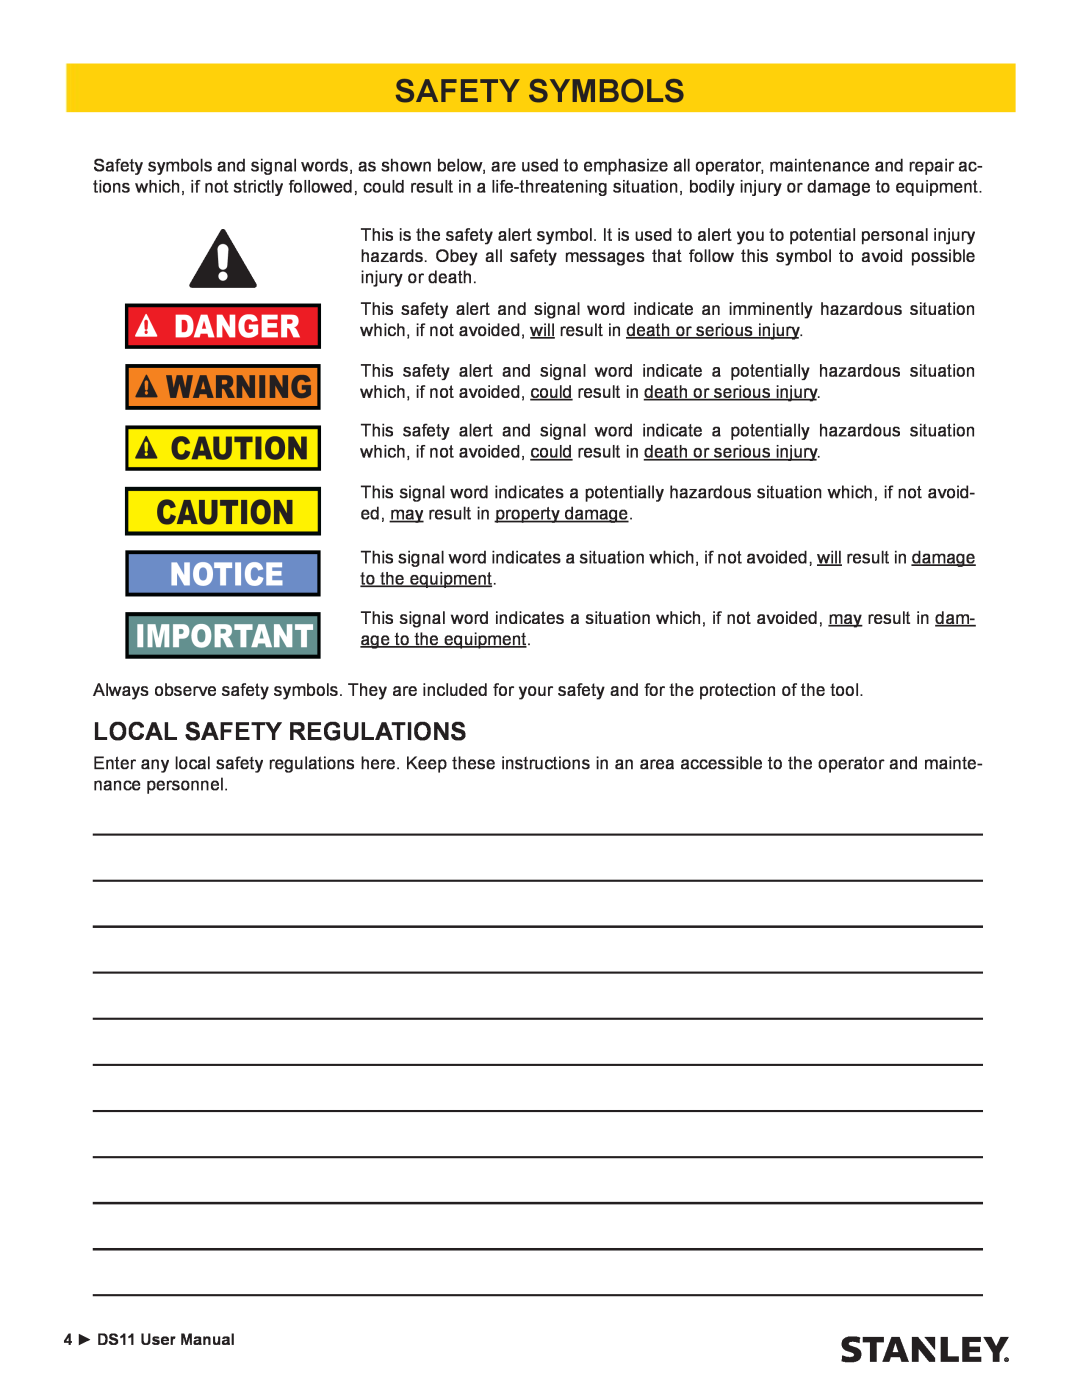 Stanley Black & Decker DS11 user manual Safety Symbols, Local Safety Regulations, Danger 